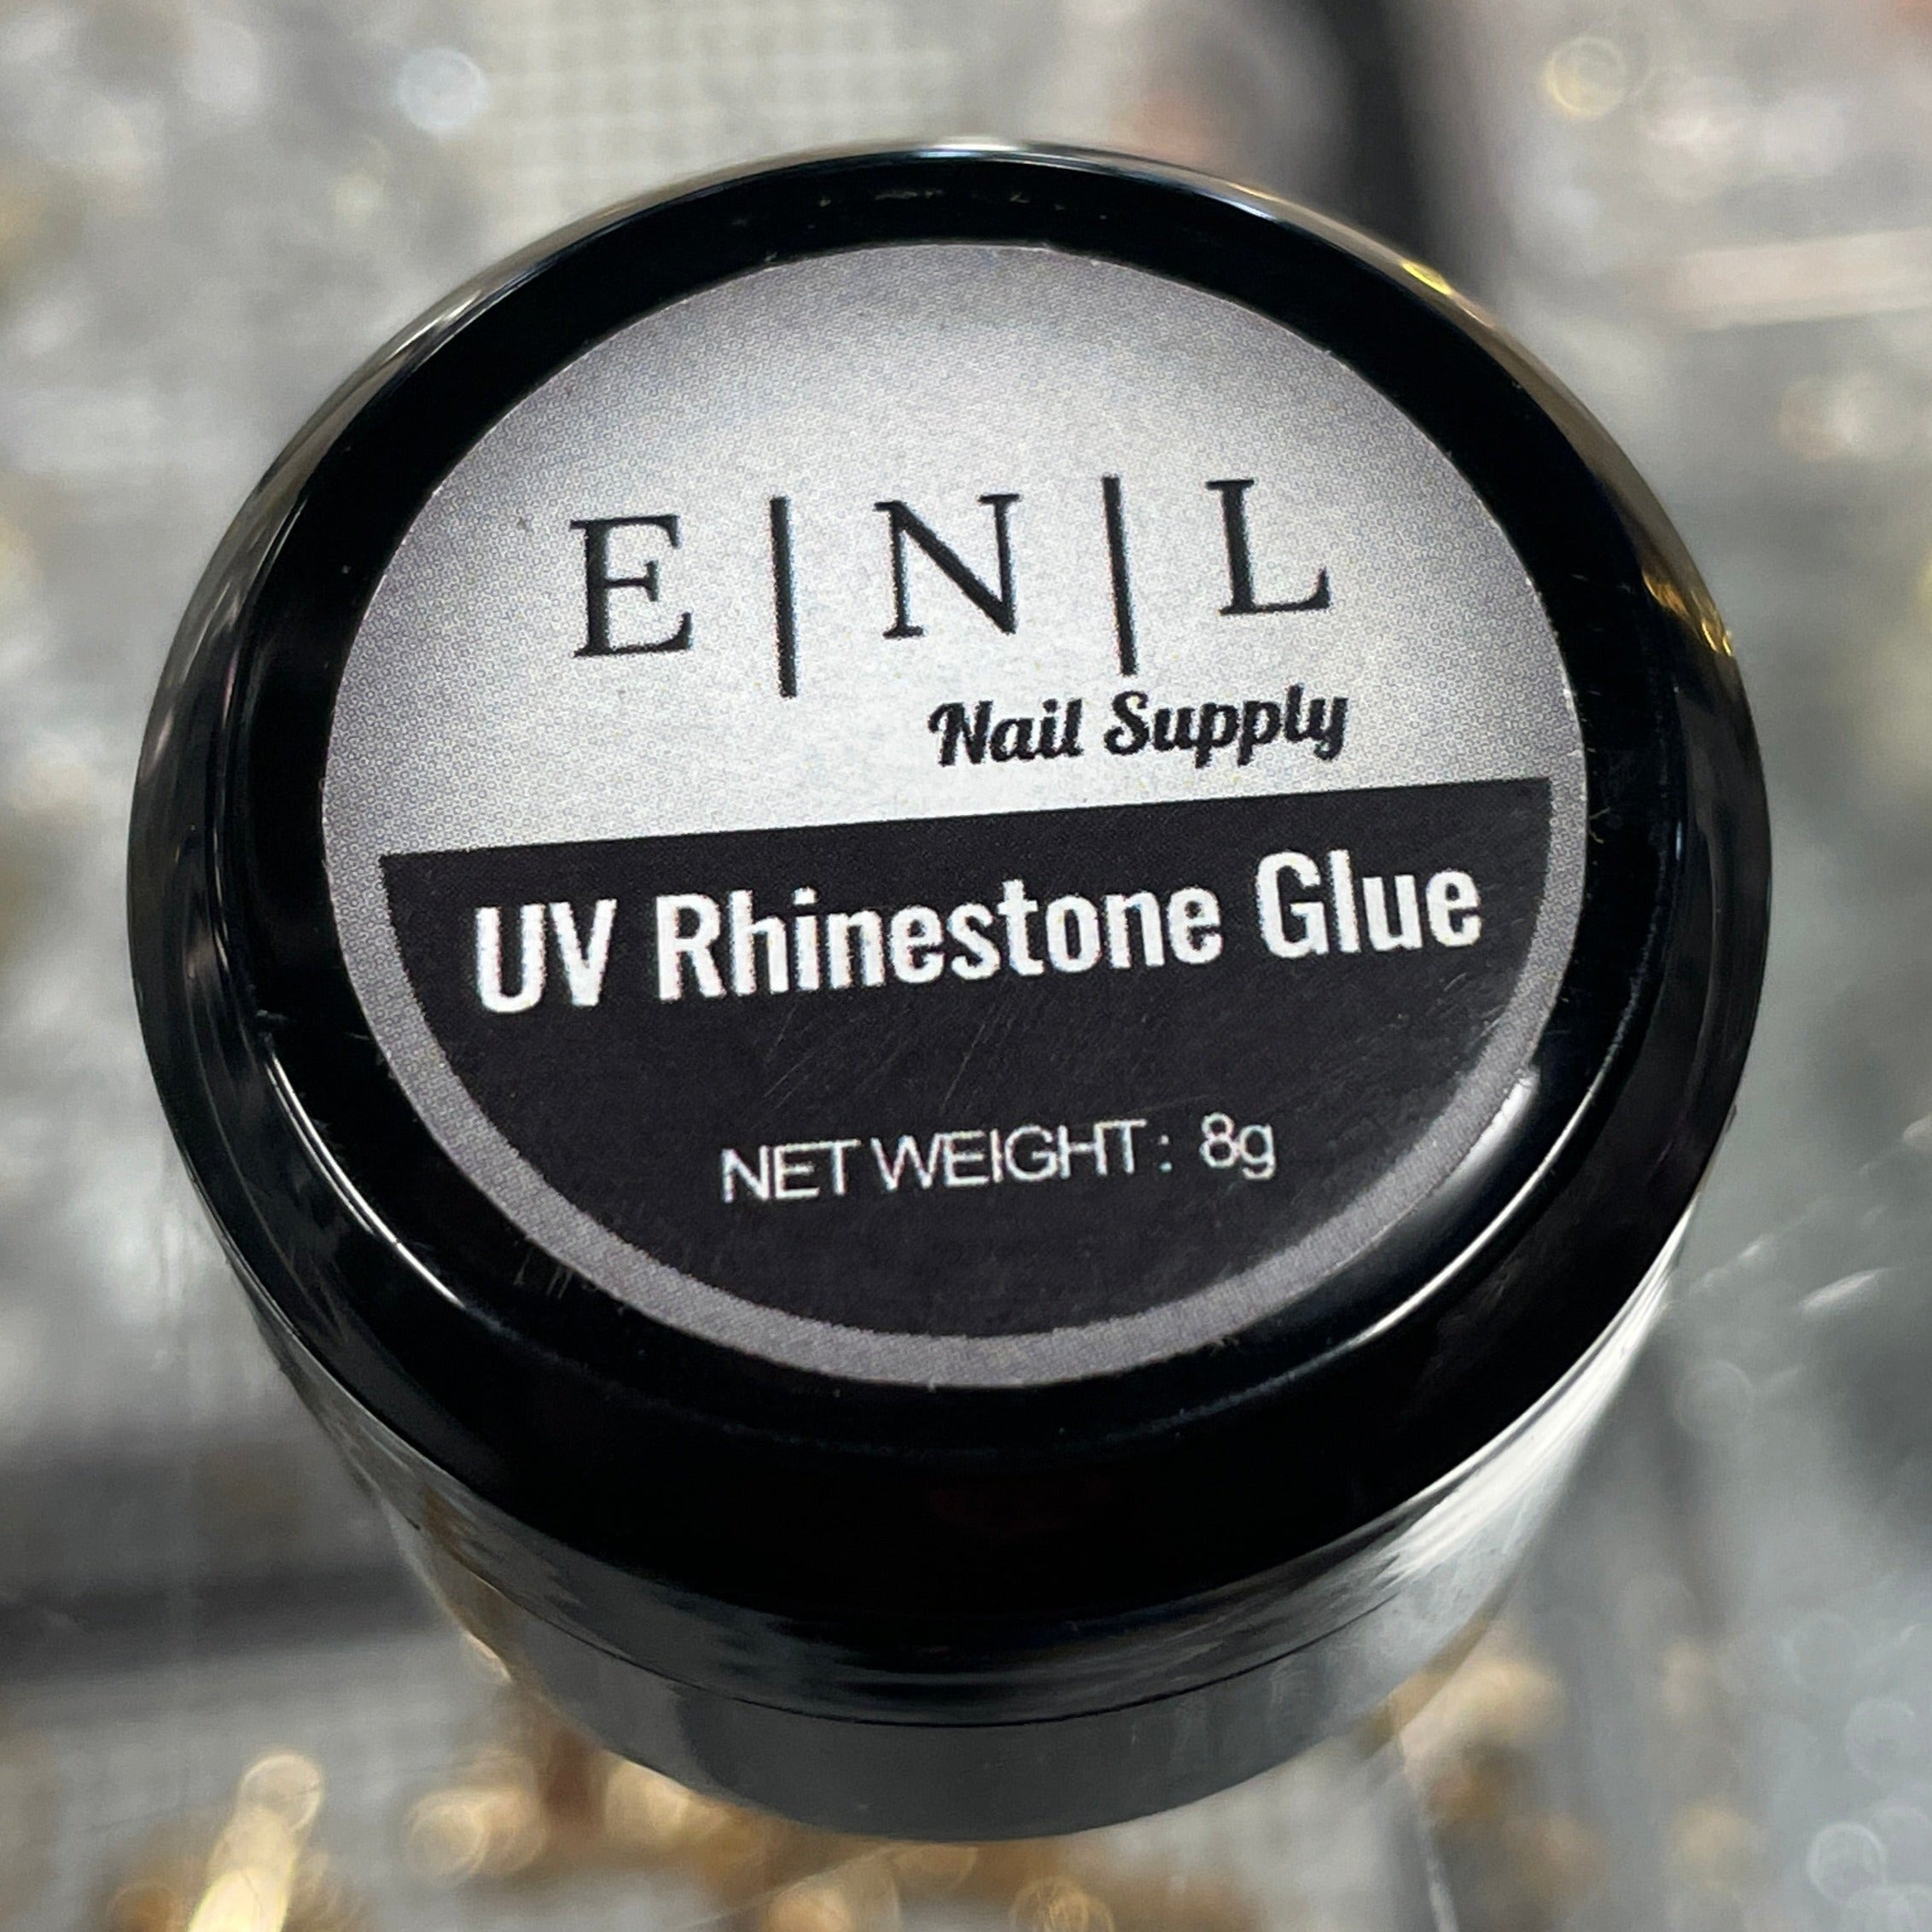 Rhinestone Glue Gel 250g – BORN PRETTY